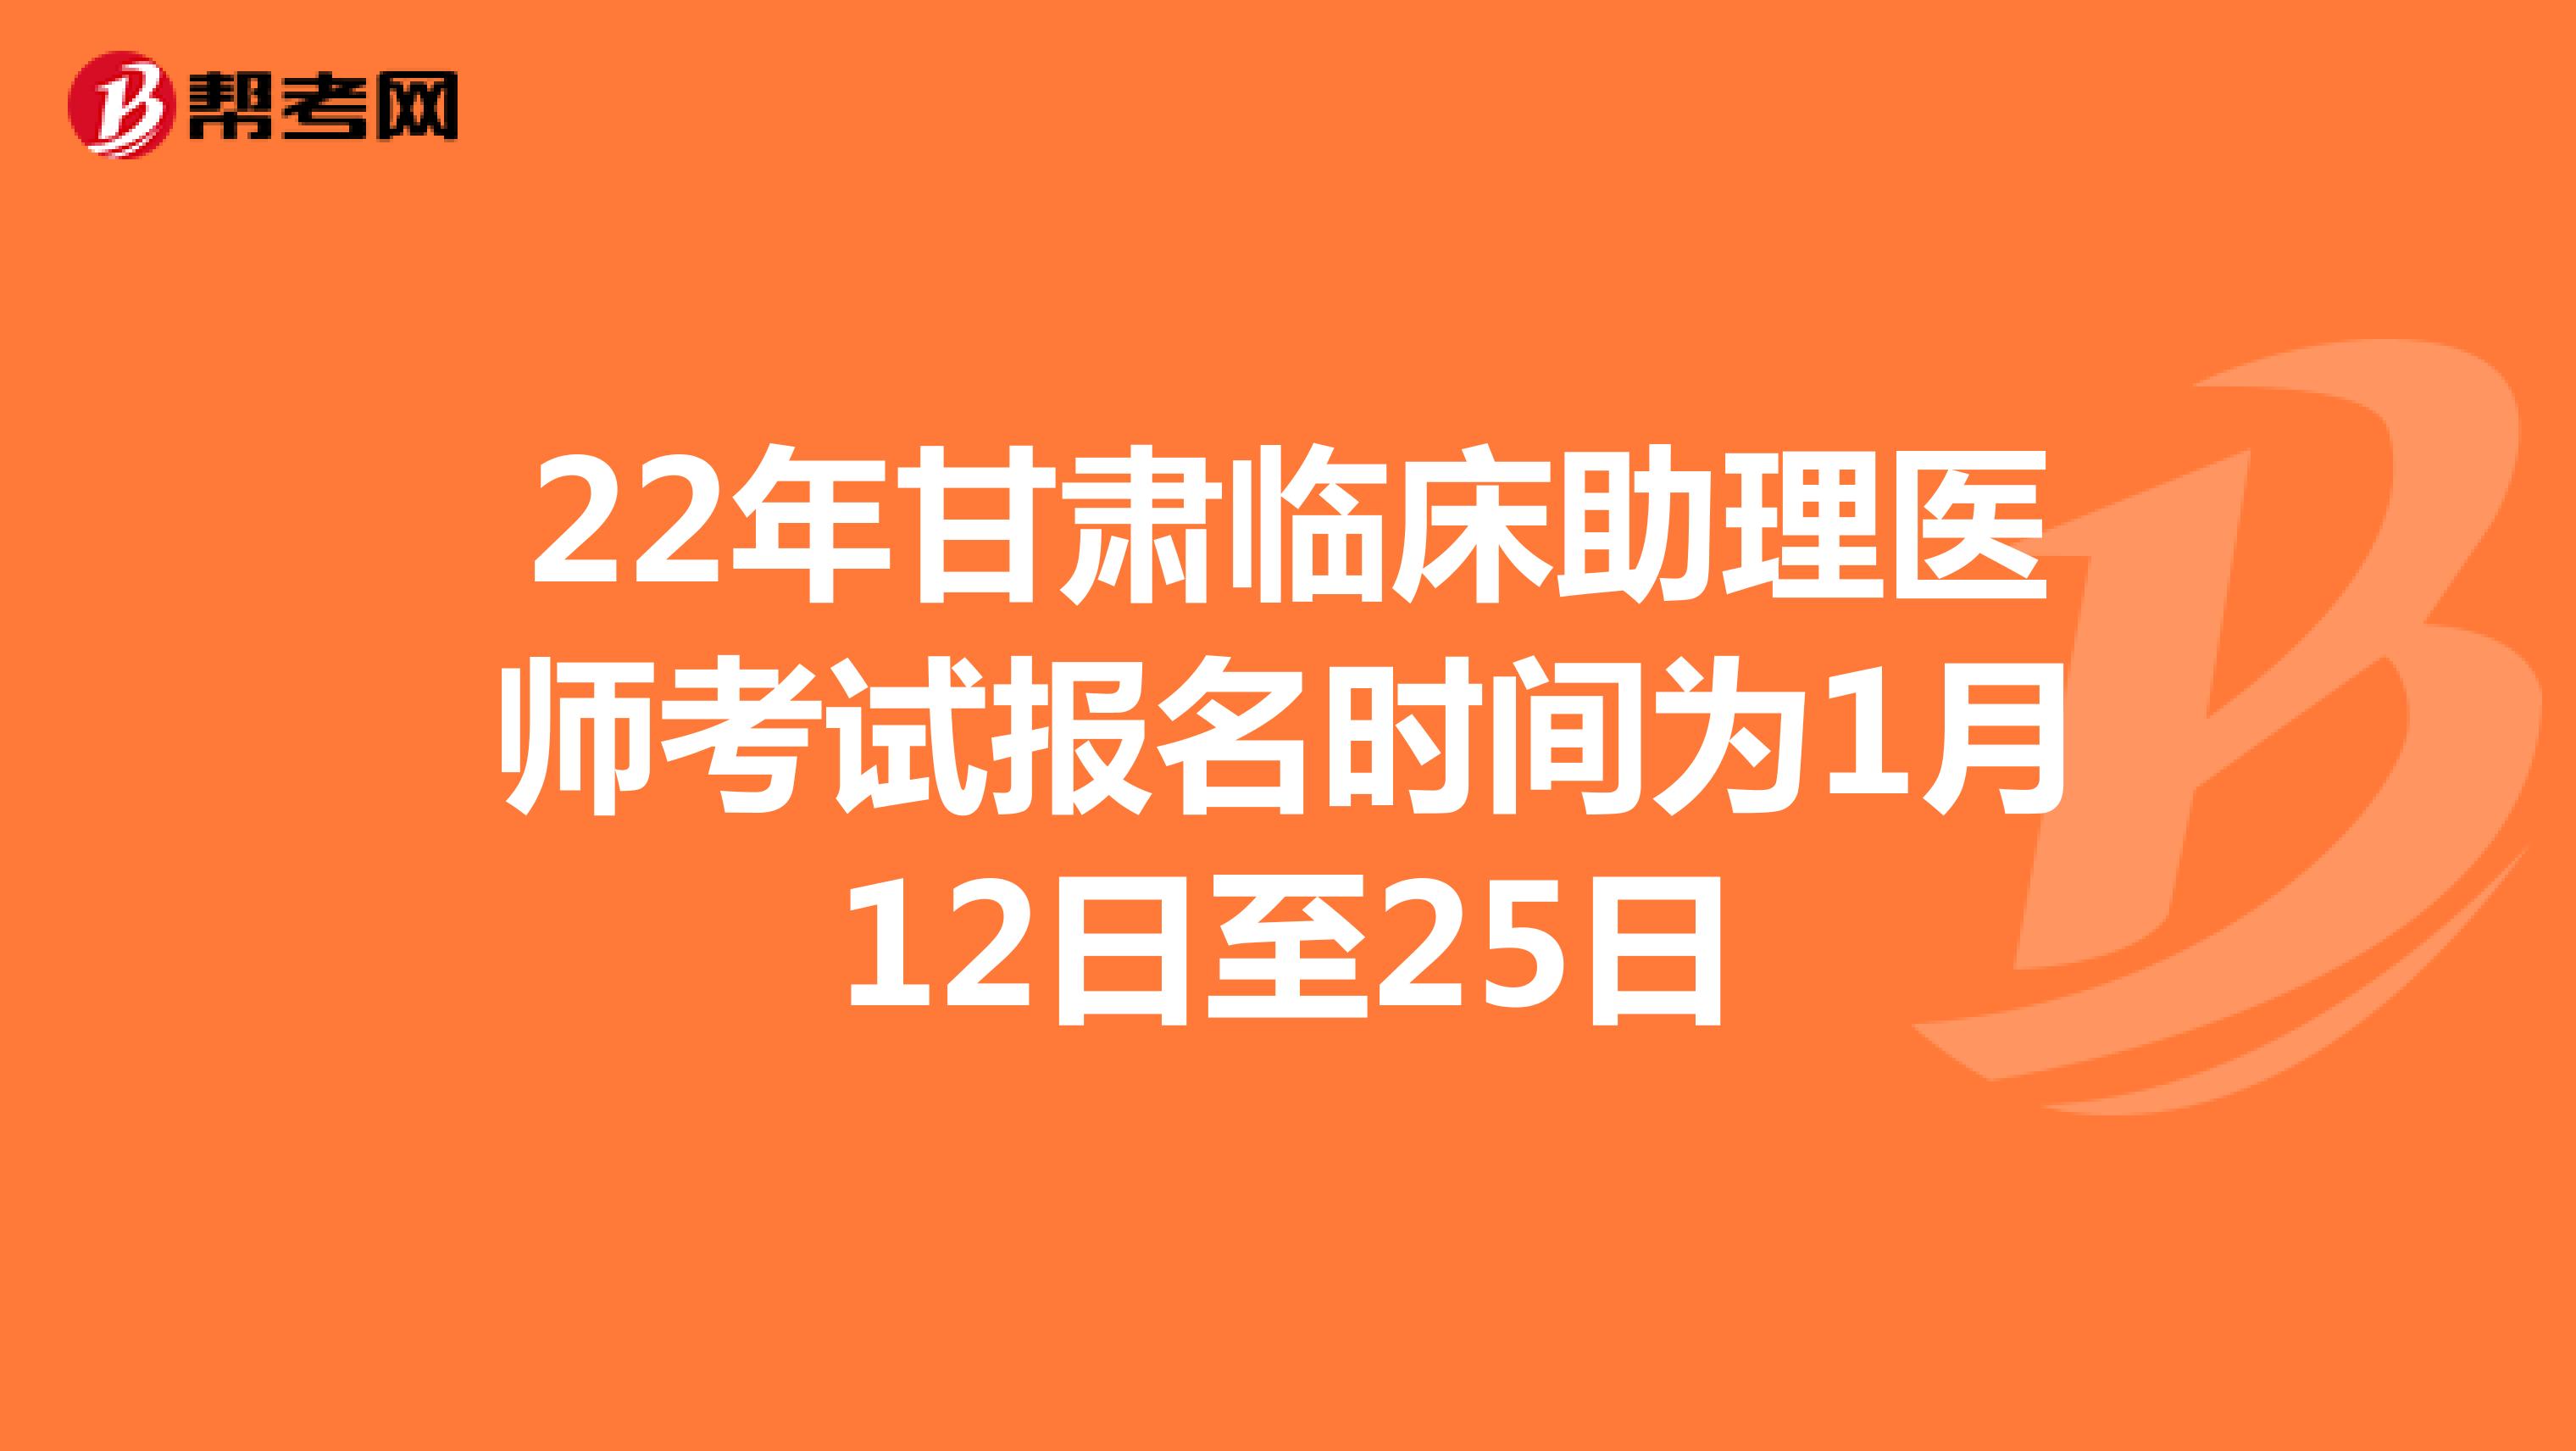 22年甘肃临床助理医师考试报名时间为1月12日至25日